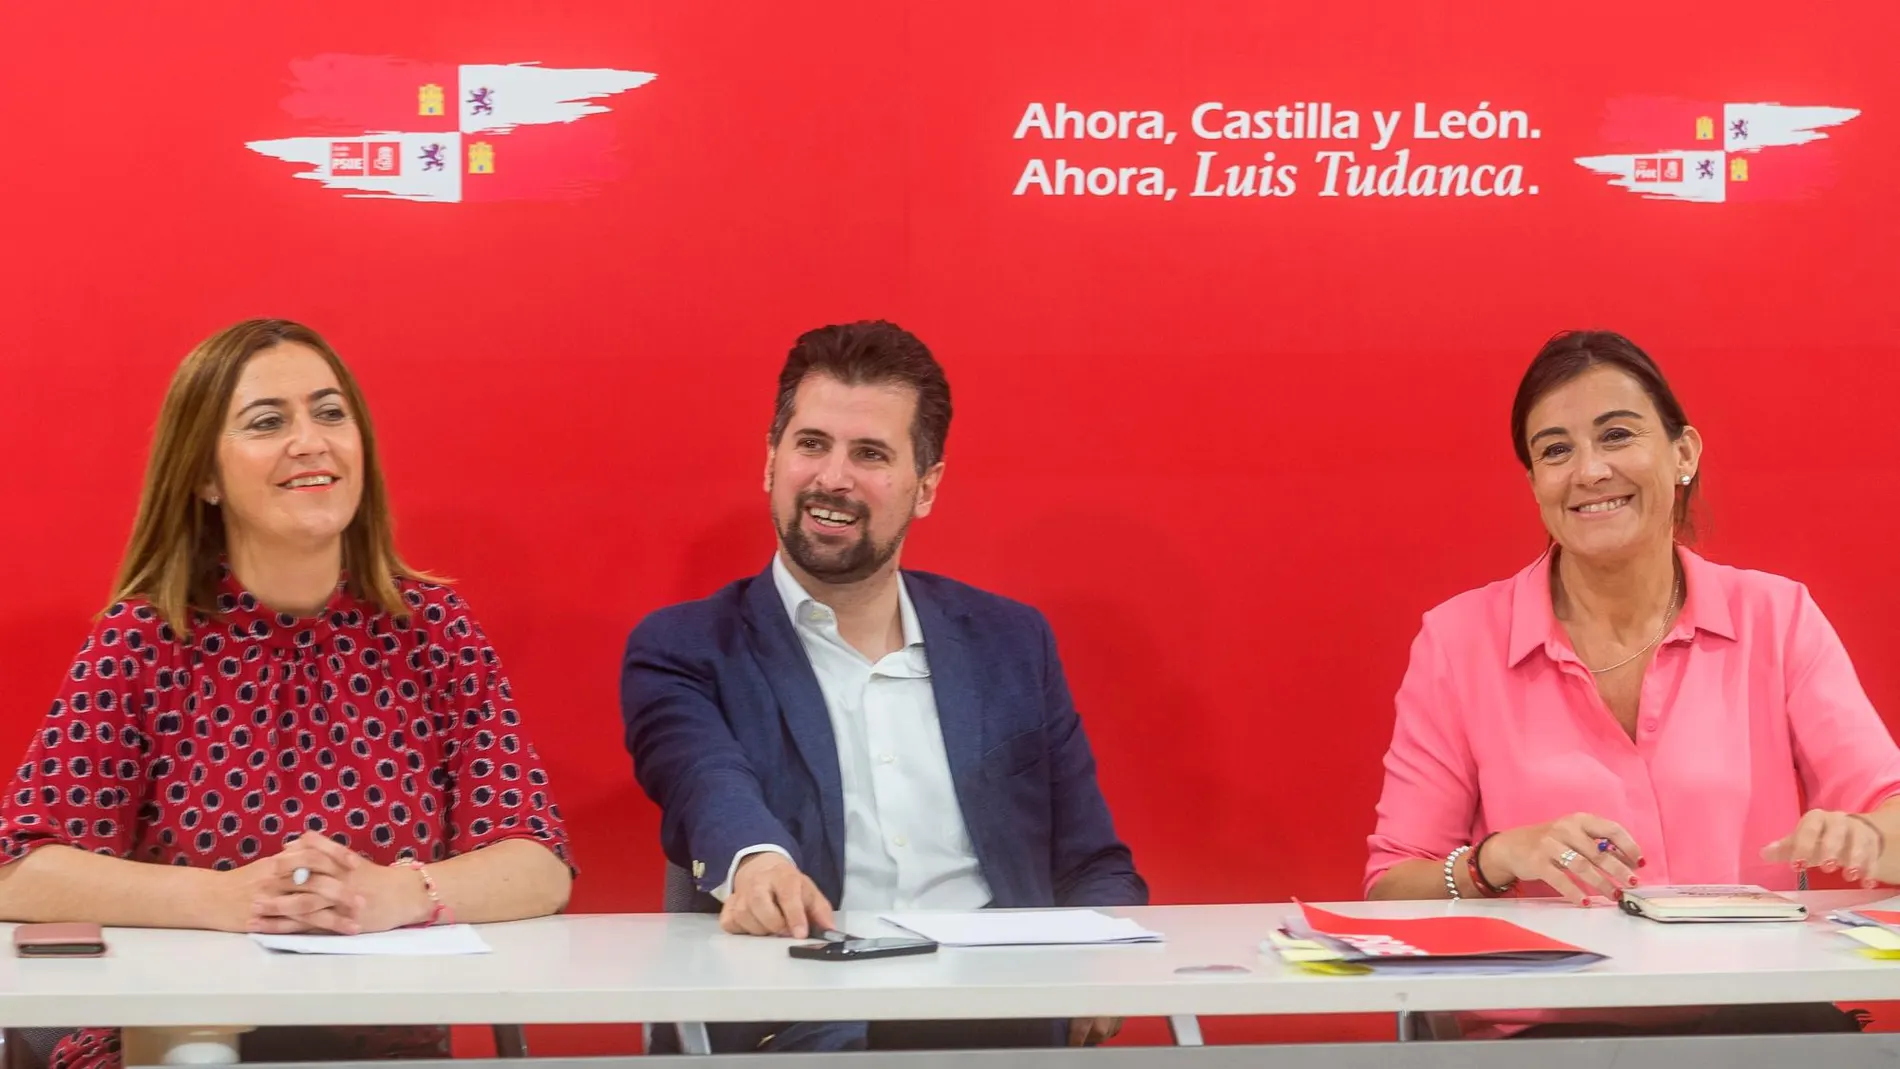 Luis Tudanca preside el Plenario de la Comisión Ejecutiva del PSOE acompañado de Virginia Barcones y Ana Sánchez